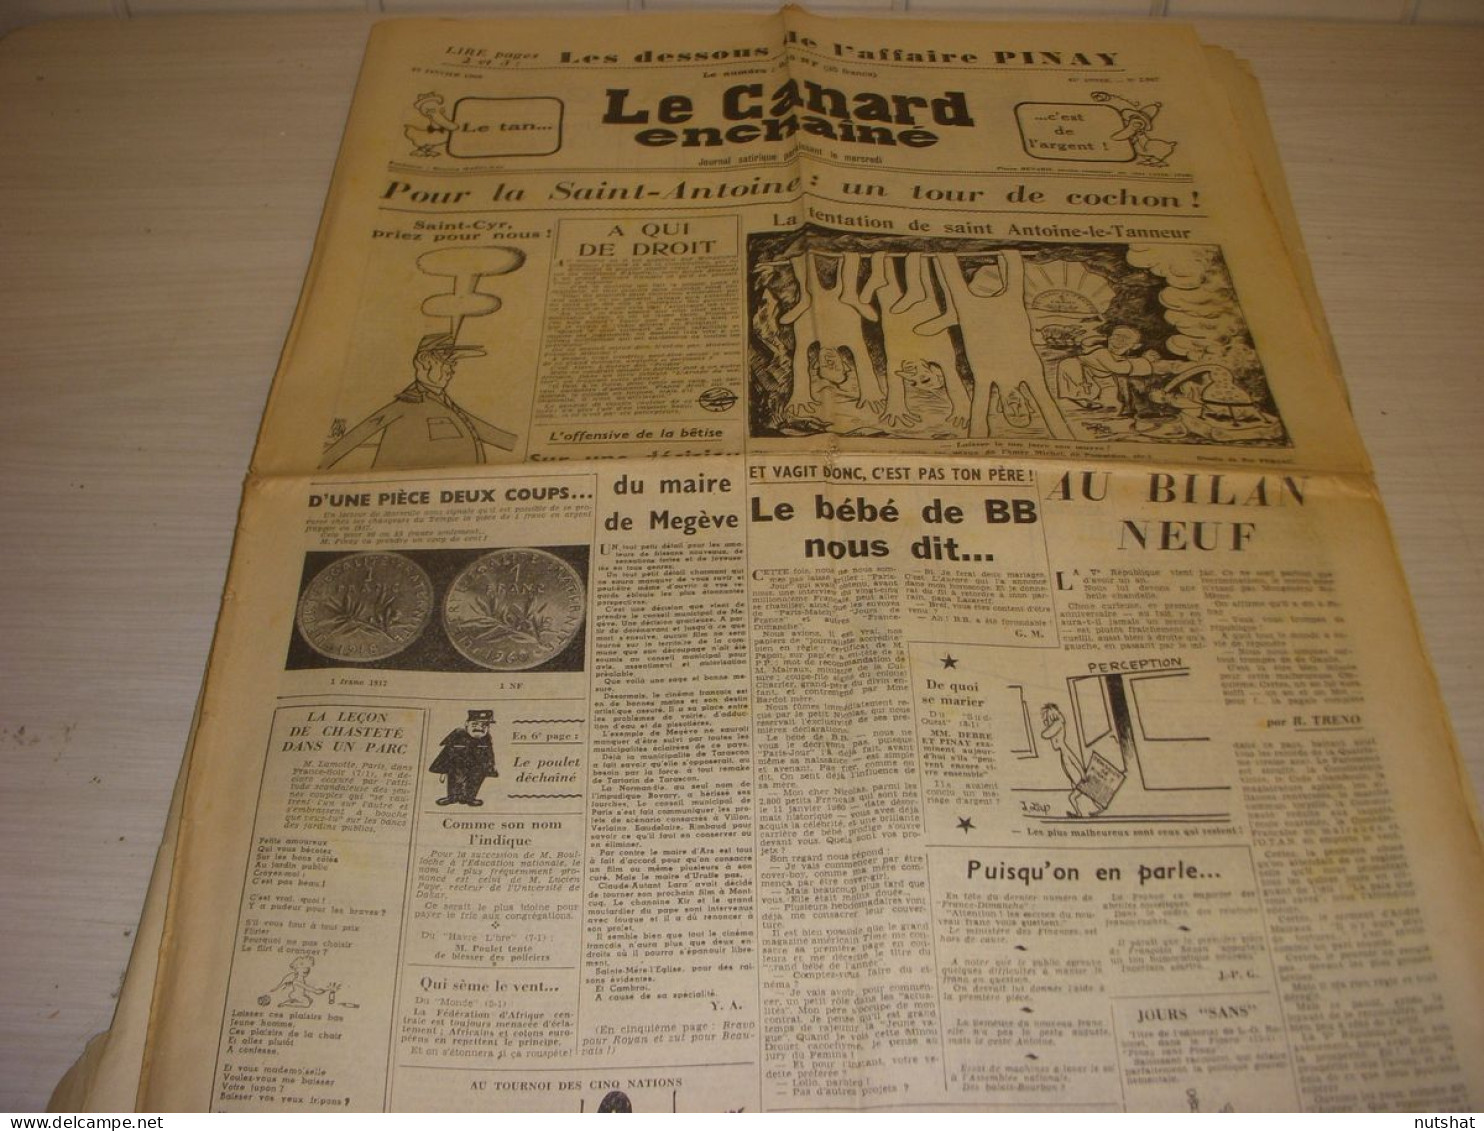 CANARD ENCHAINE 2047 13.01.1960 Maurice PAPON Robert LAMOUREUX HORLOGE RTF - Politique